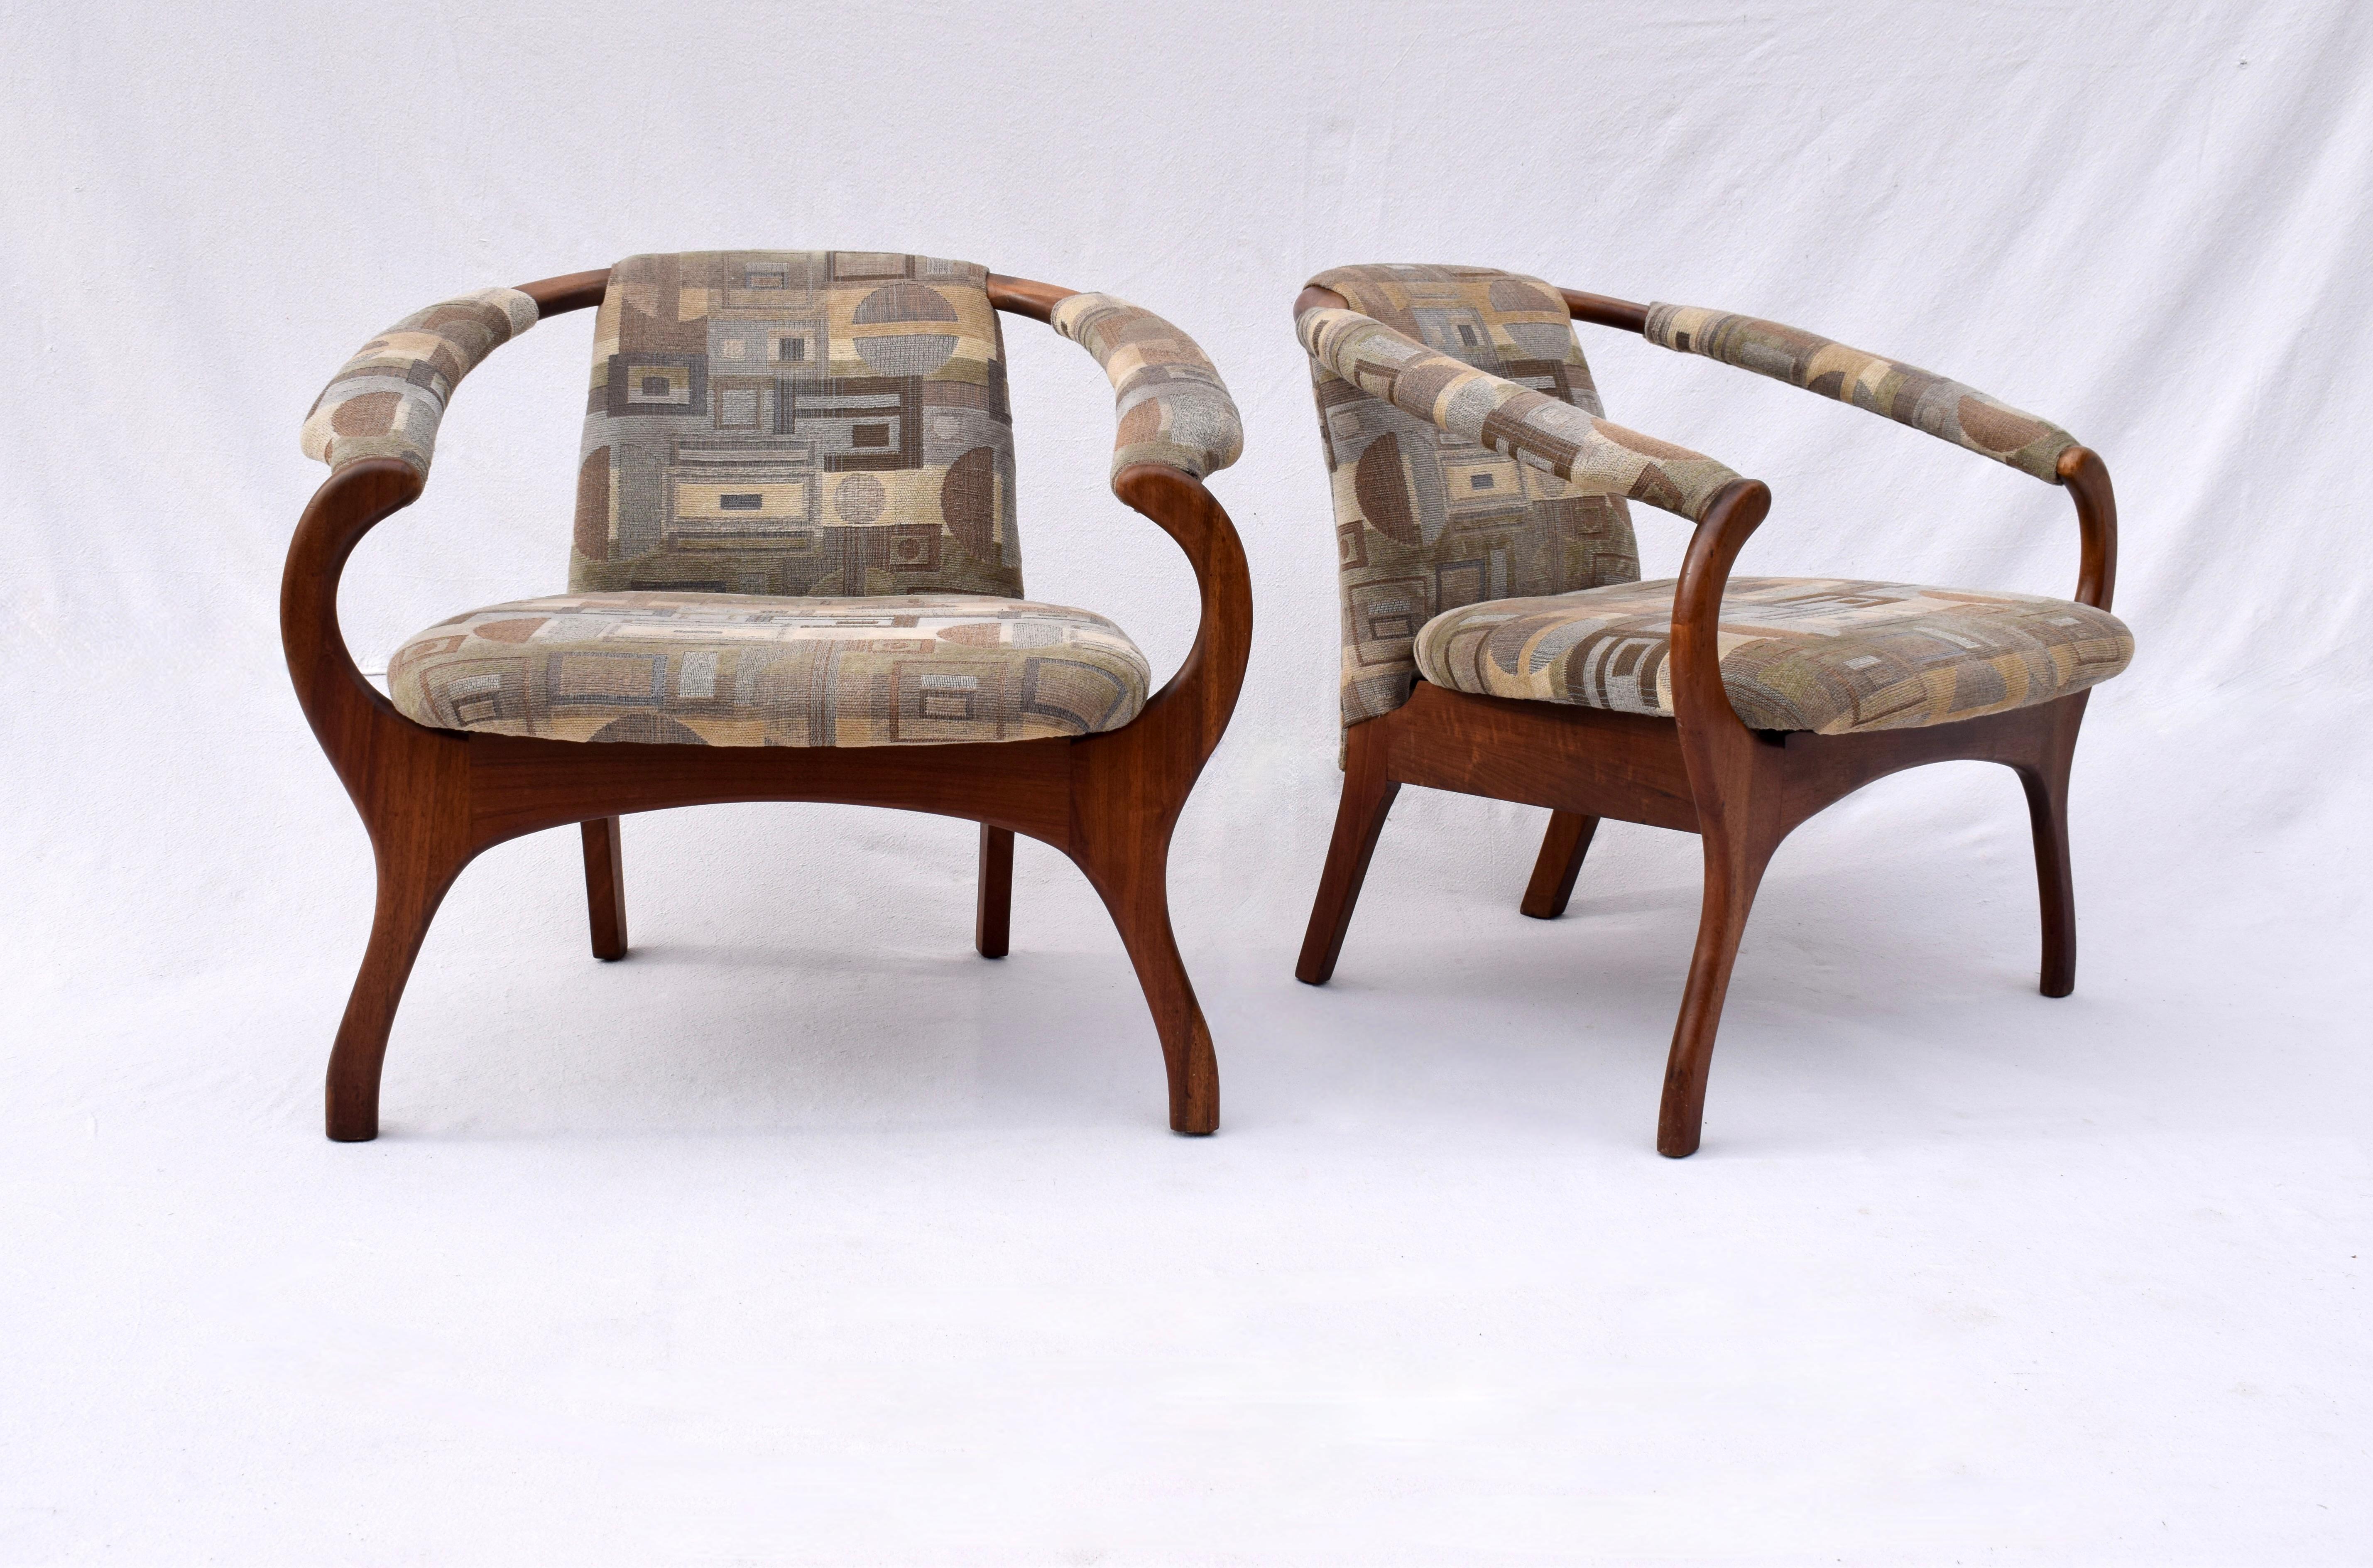 Selten gesehenes Paar Club-/Lounge-Stühle aus massivem Nussbaum, Adrian Pearsall zugeschrieben, ca. 1970er Jahre. Alles original in schönem, gepflegtem Zustand; sofort einsatzbereit. Sitze: 16